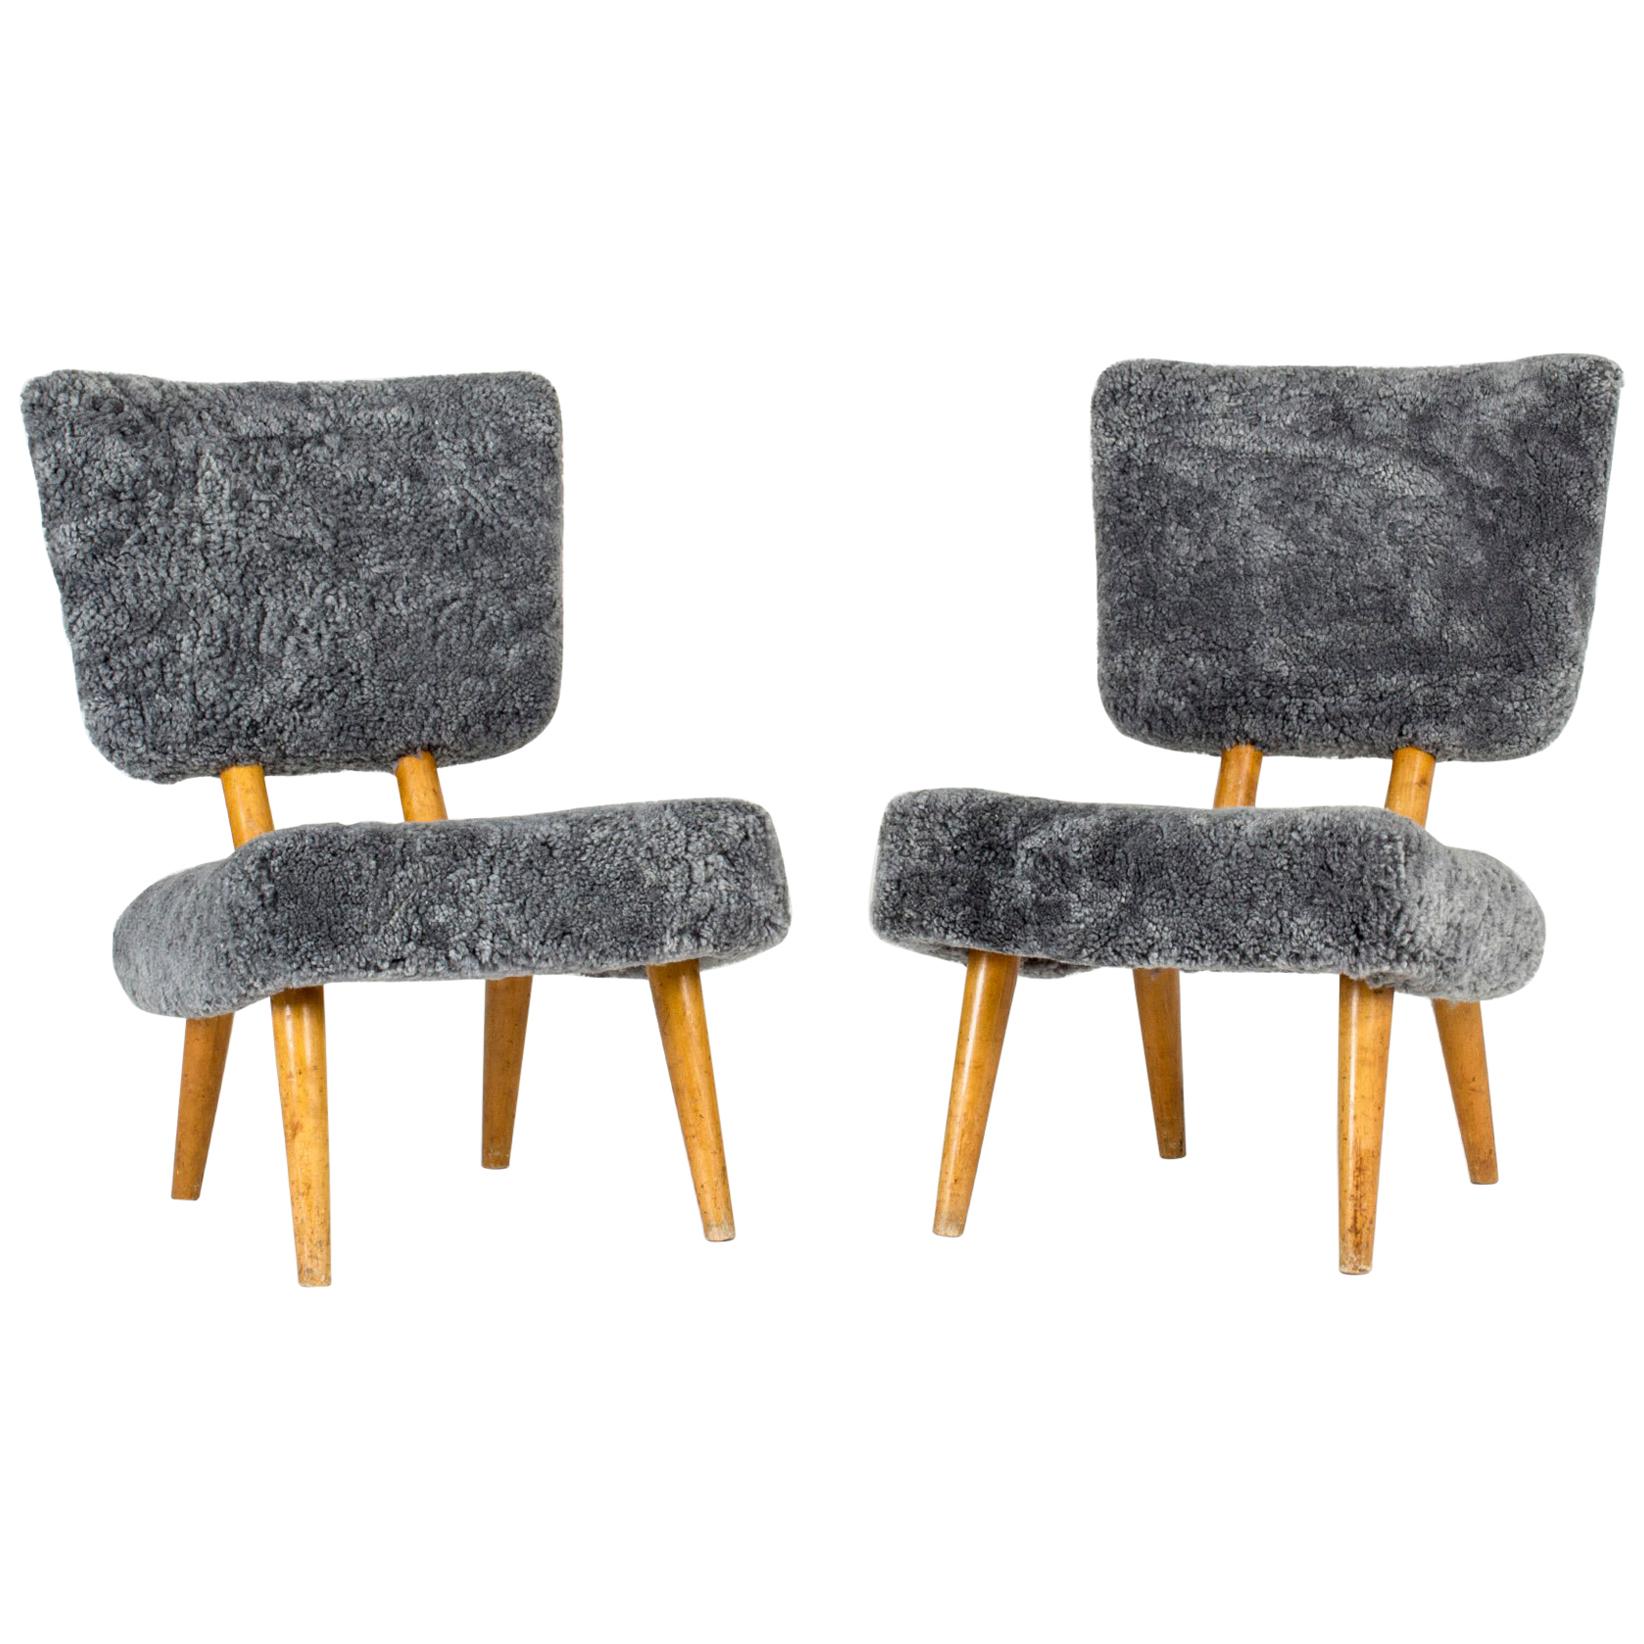 Pair of Norwegian 1940s Sheepskin Chairs